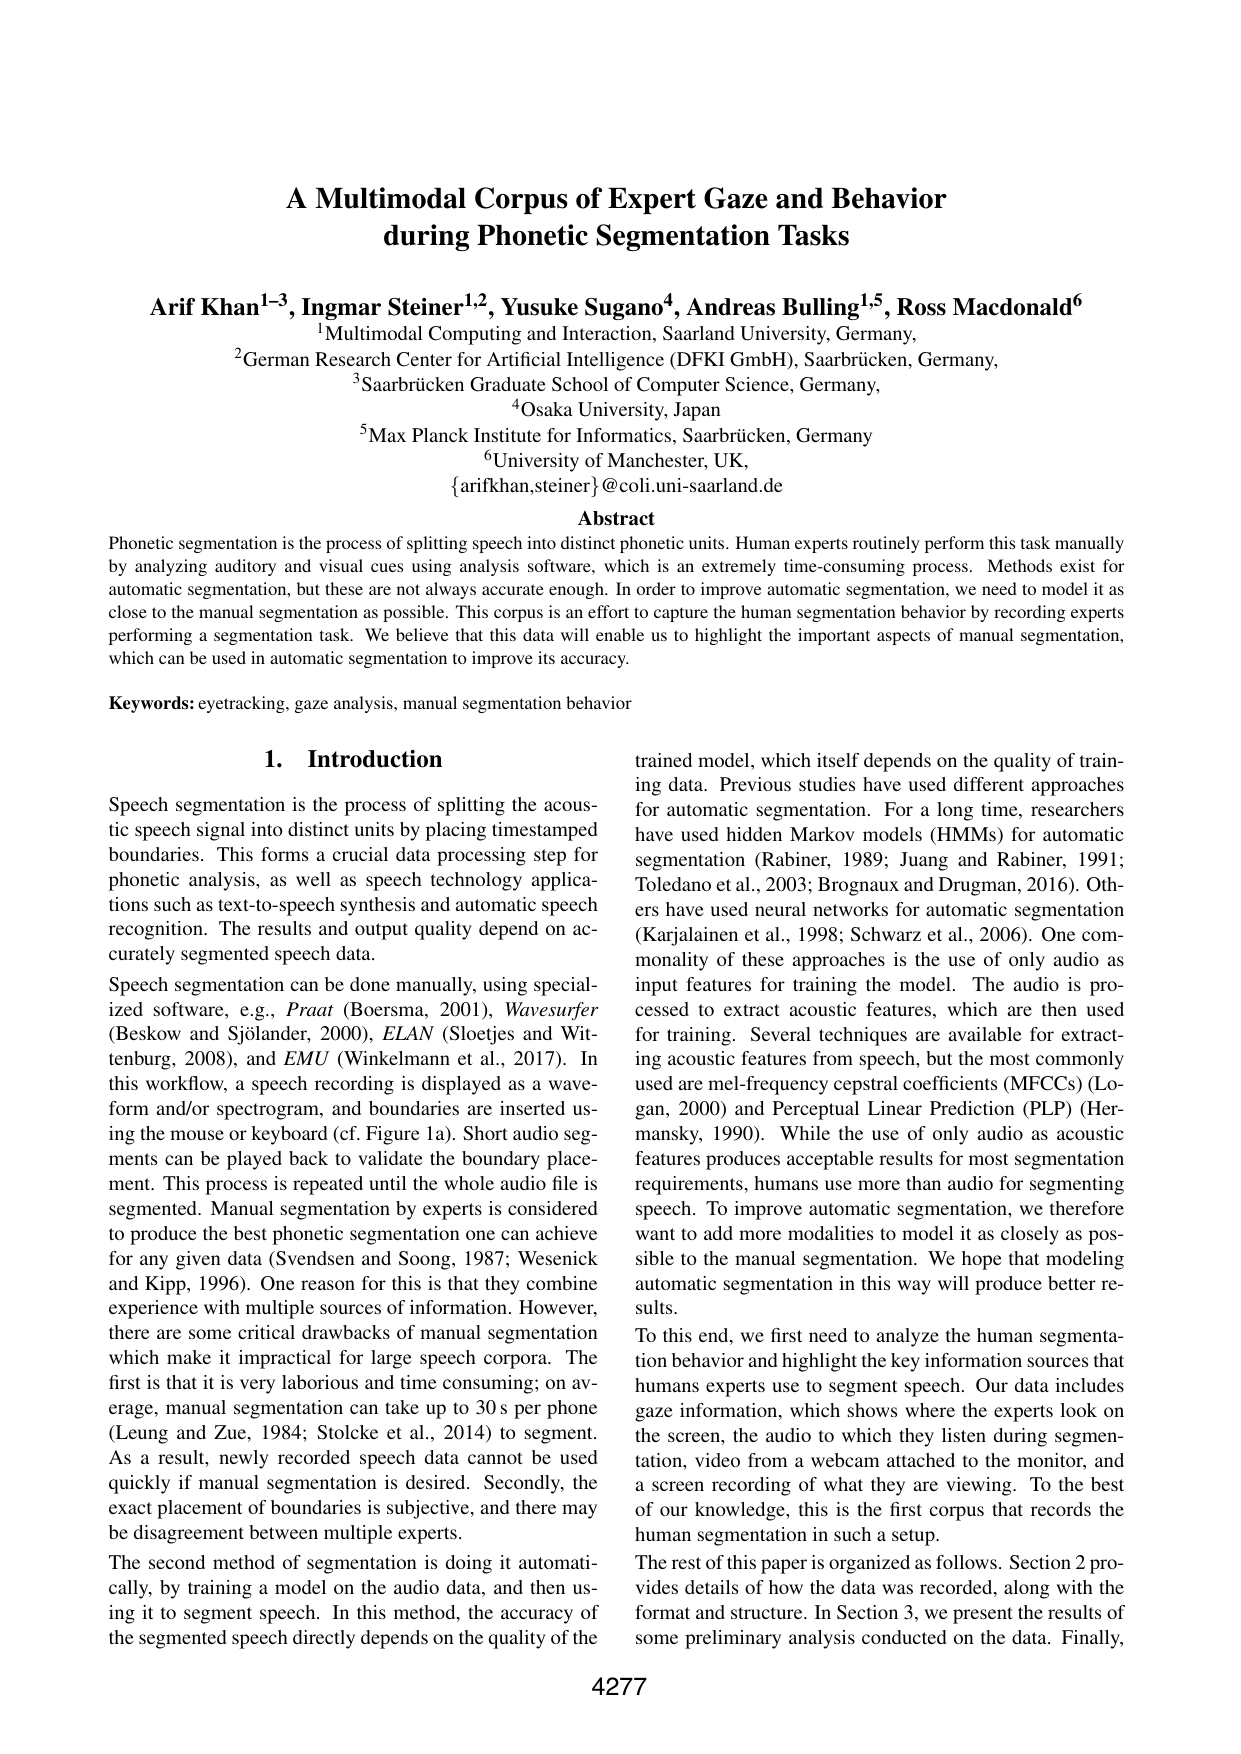 A Multimodal Corpus of Expert Gaze and Behavior during Phonetic Segmentation Tasks